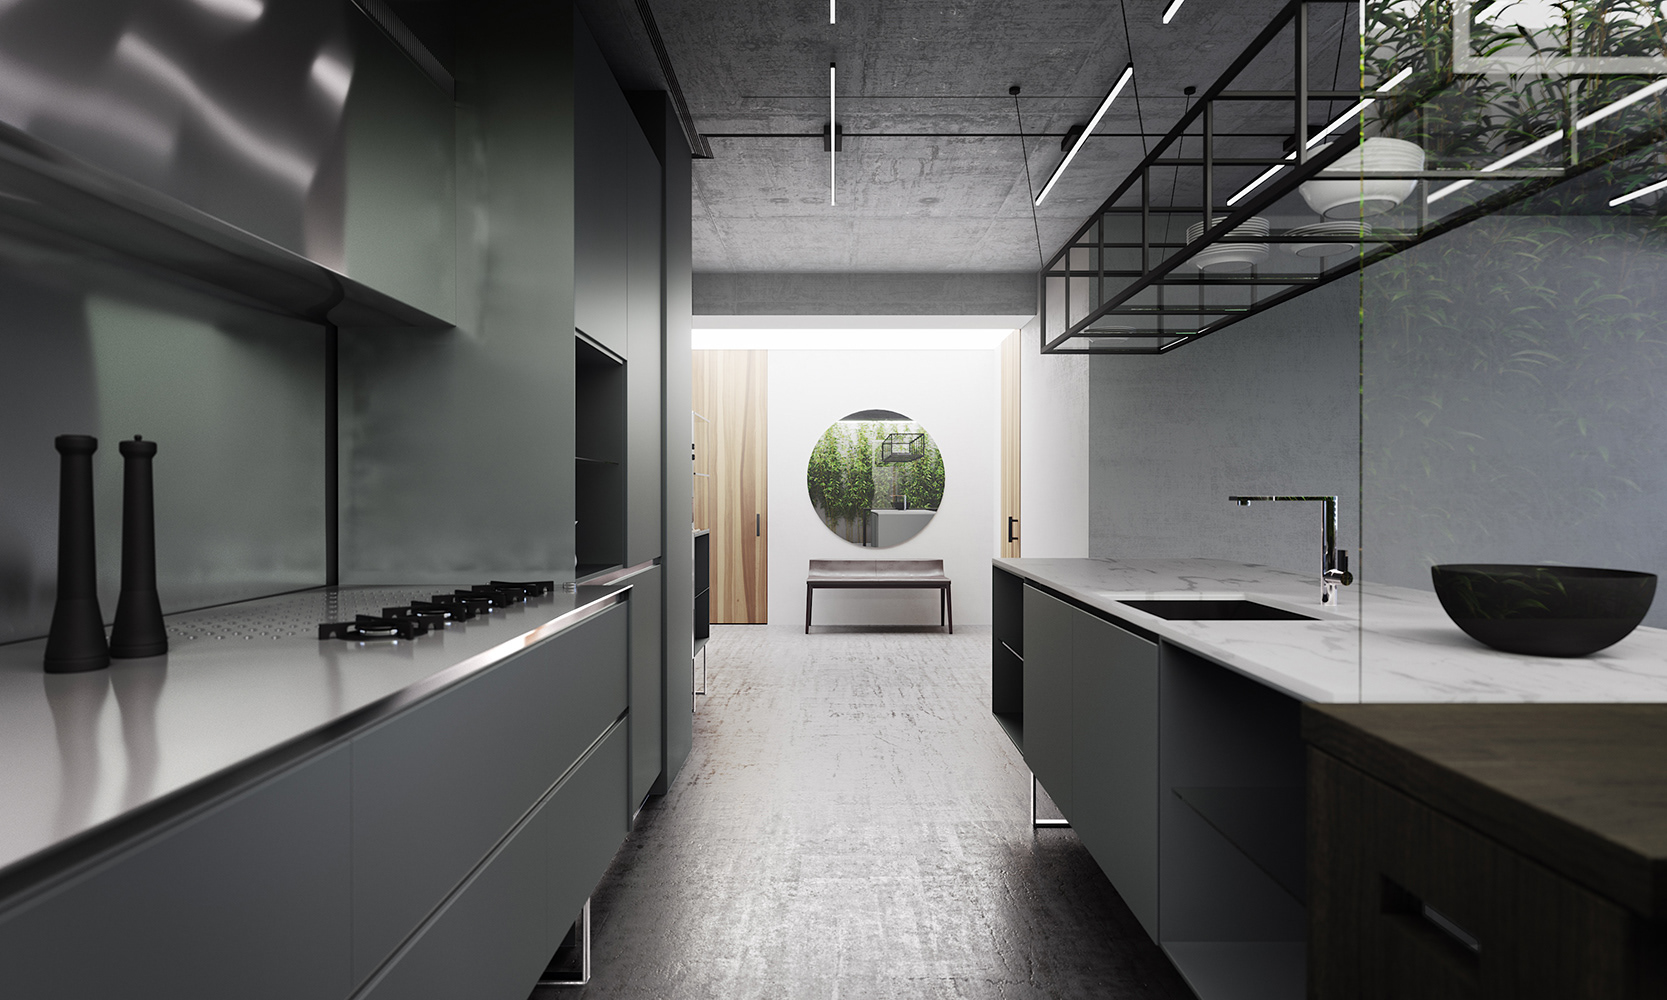 厨房墙面与地面相互呼应，显得温馨而雅致，灰米色橱柜与空间自成一体，给人恬静的感觉。